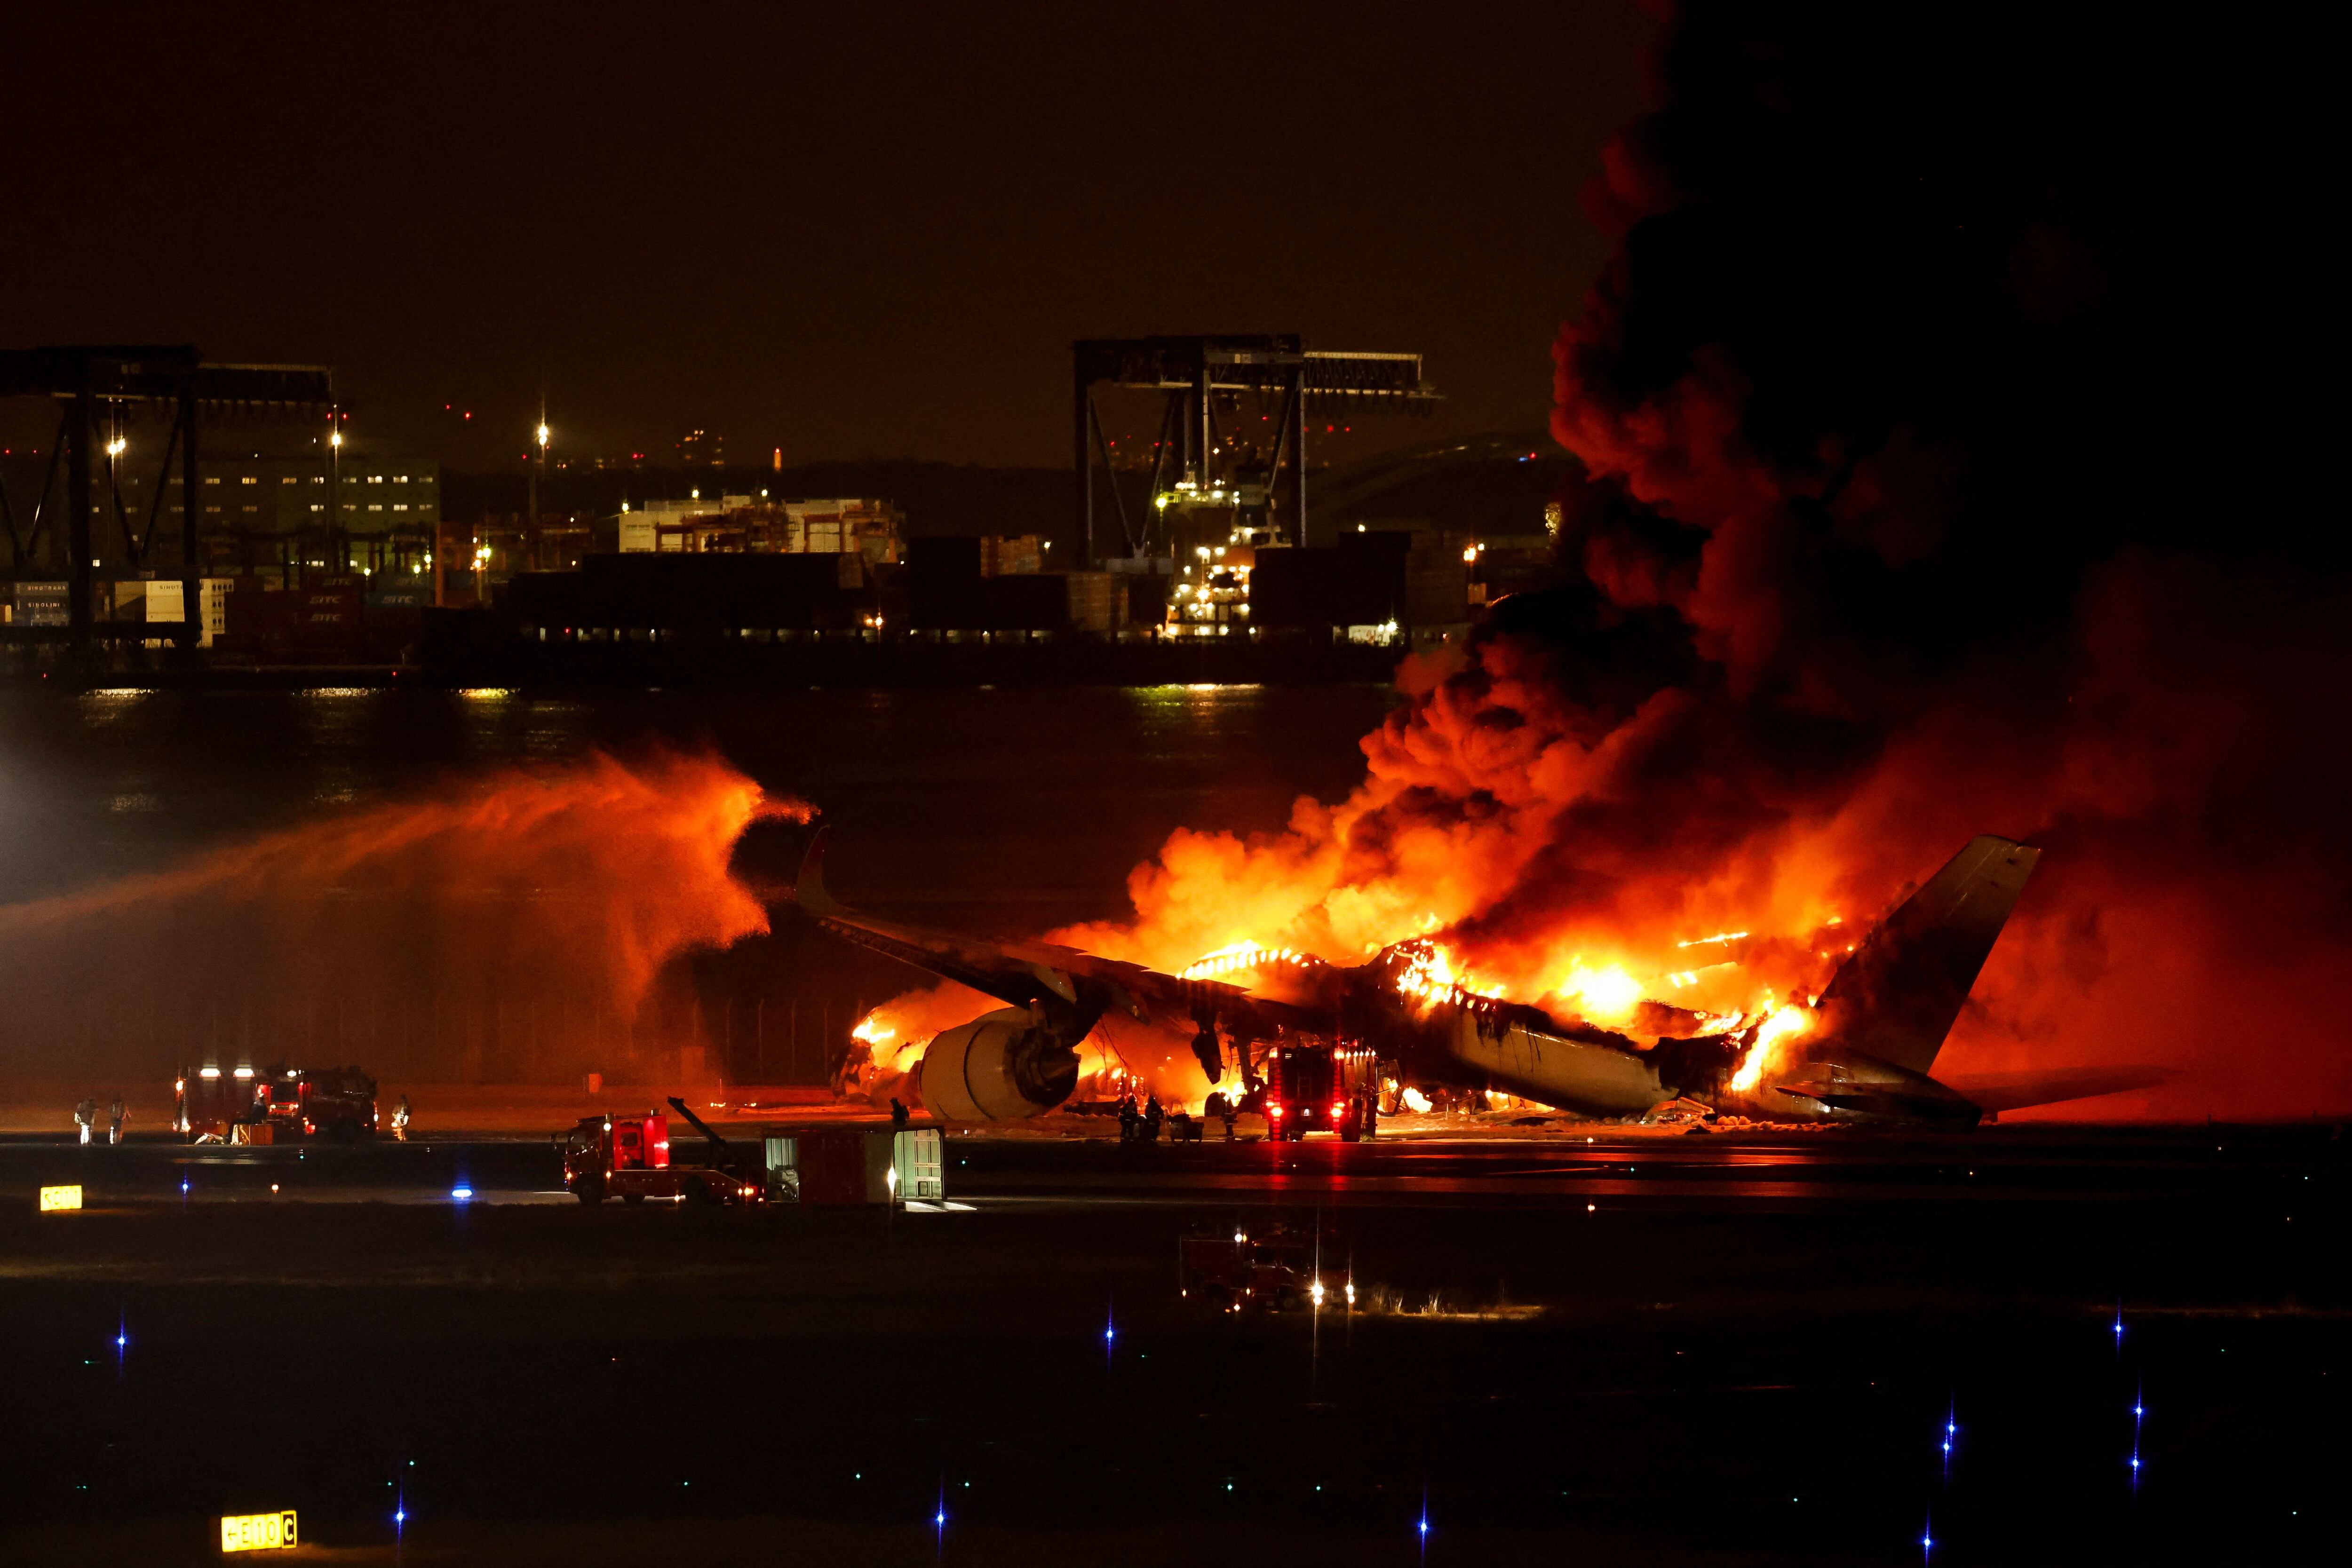 El Airbus A350 envuelto de llamas y humo tras el accidente (REUTERS/Issei Kato)
